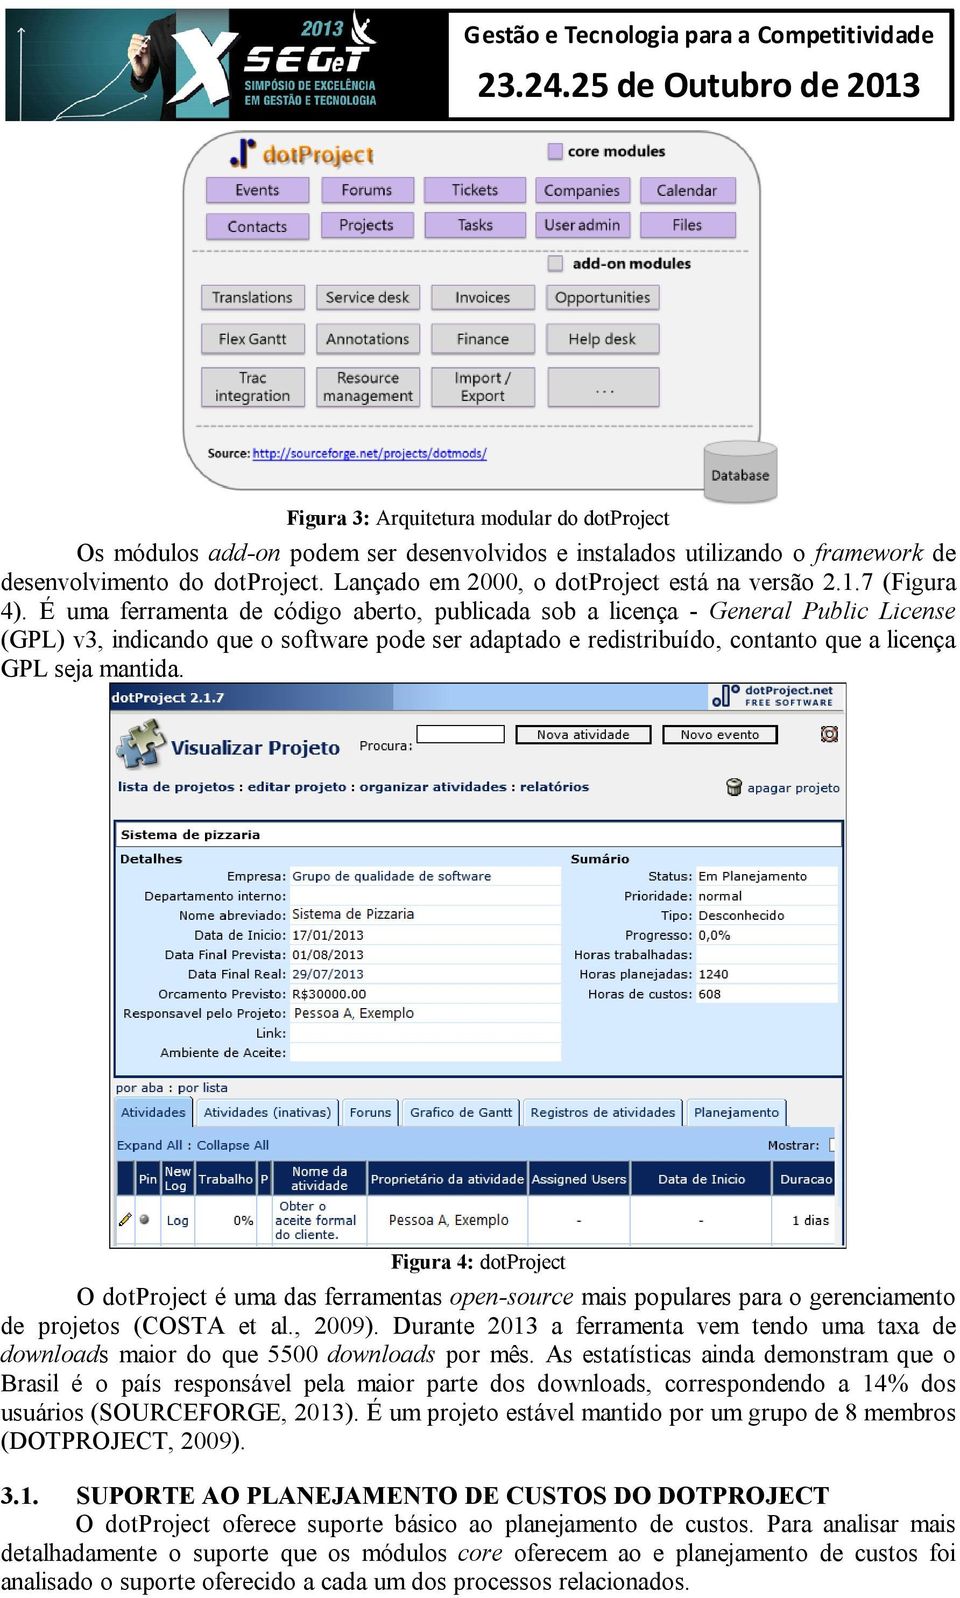 É uma ferramenta de código aberto, publicada sob a licença - General Public License (GPL) v3, indicando que o software pode ser adaptado e redistribuído, contanto que a licença GPL seja mantida.